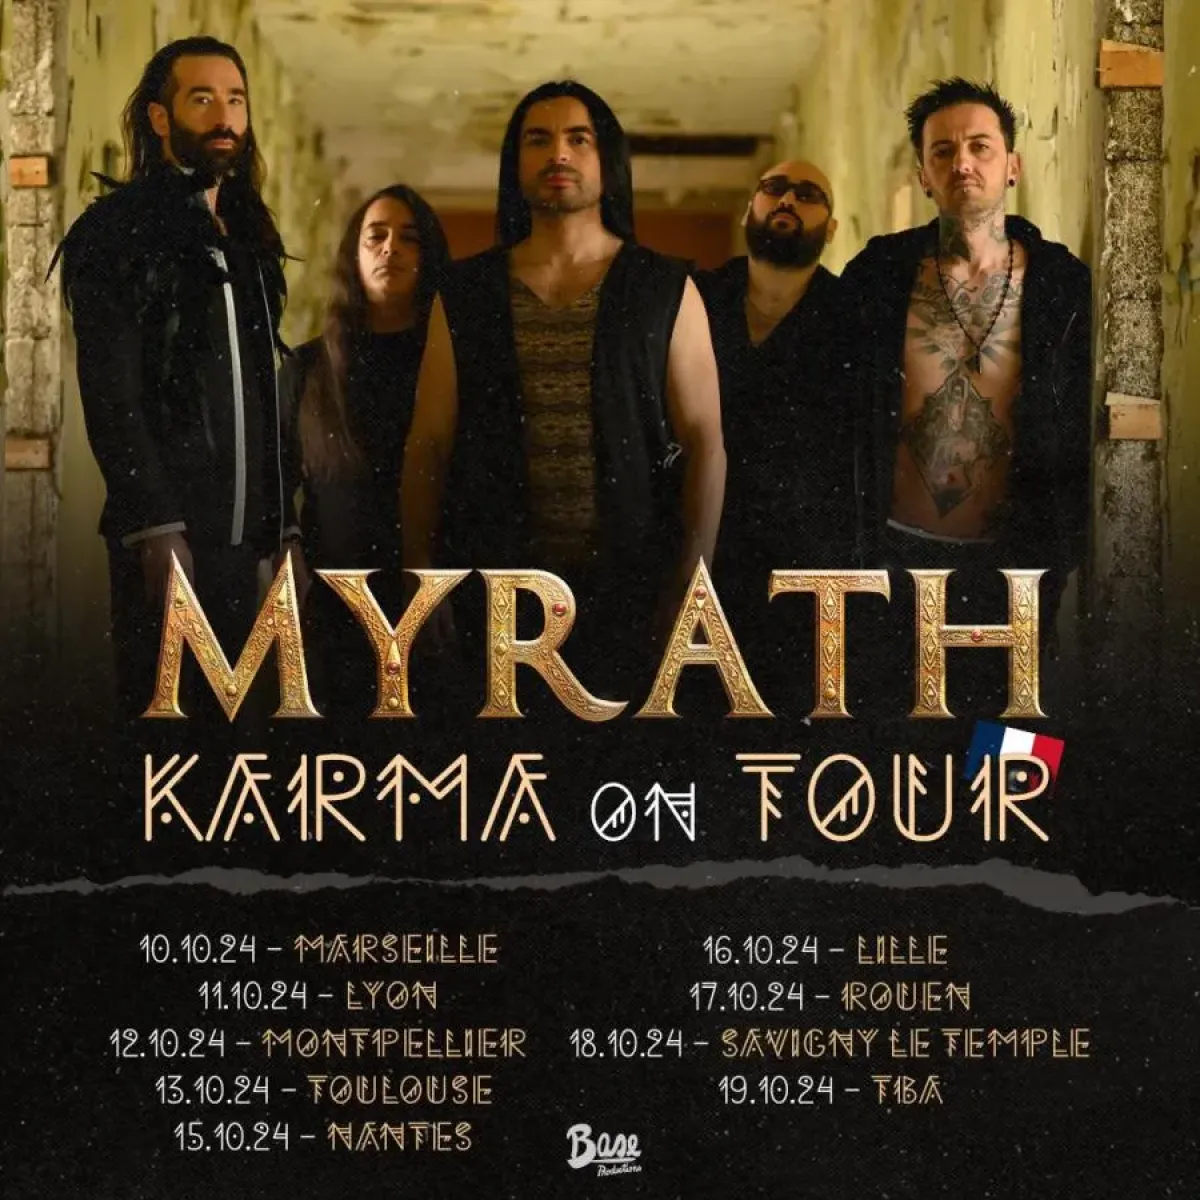 Myrath at L'Empreinte Tickets